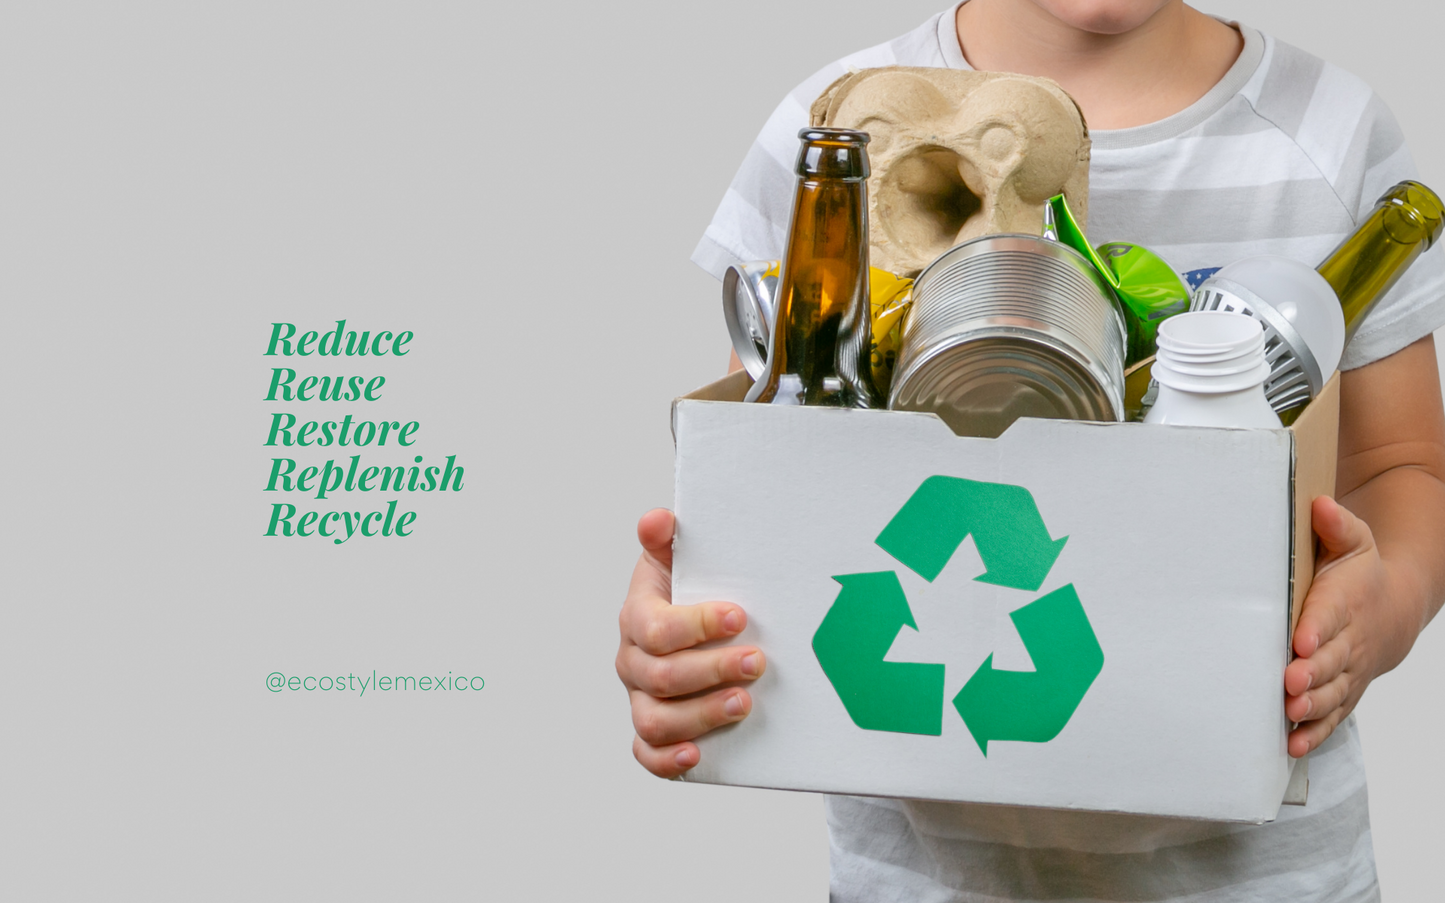 Te enseñamos a reciclar con esta guía, conoce más sobre reciclaje y ecología!